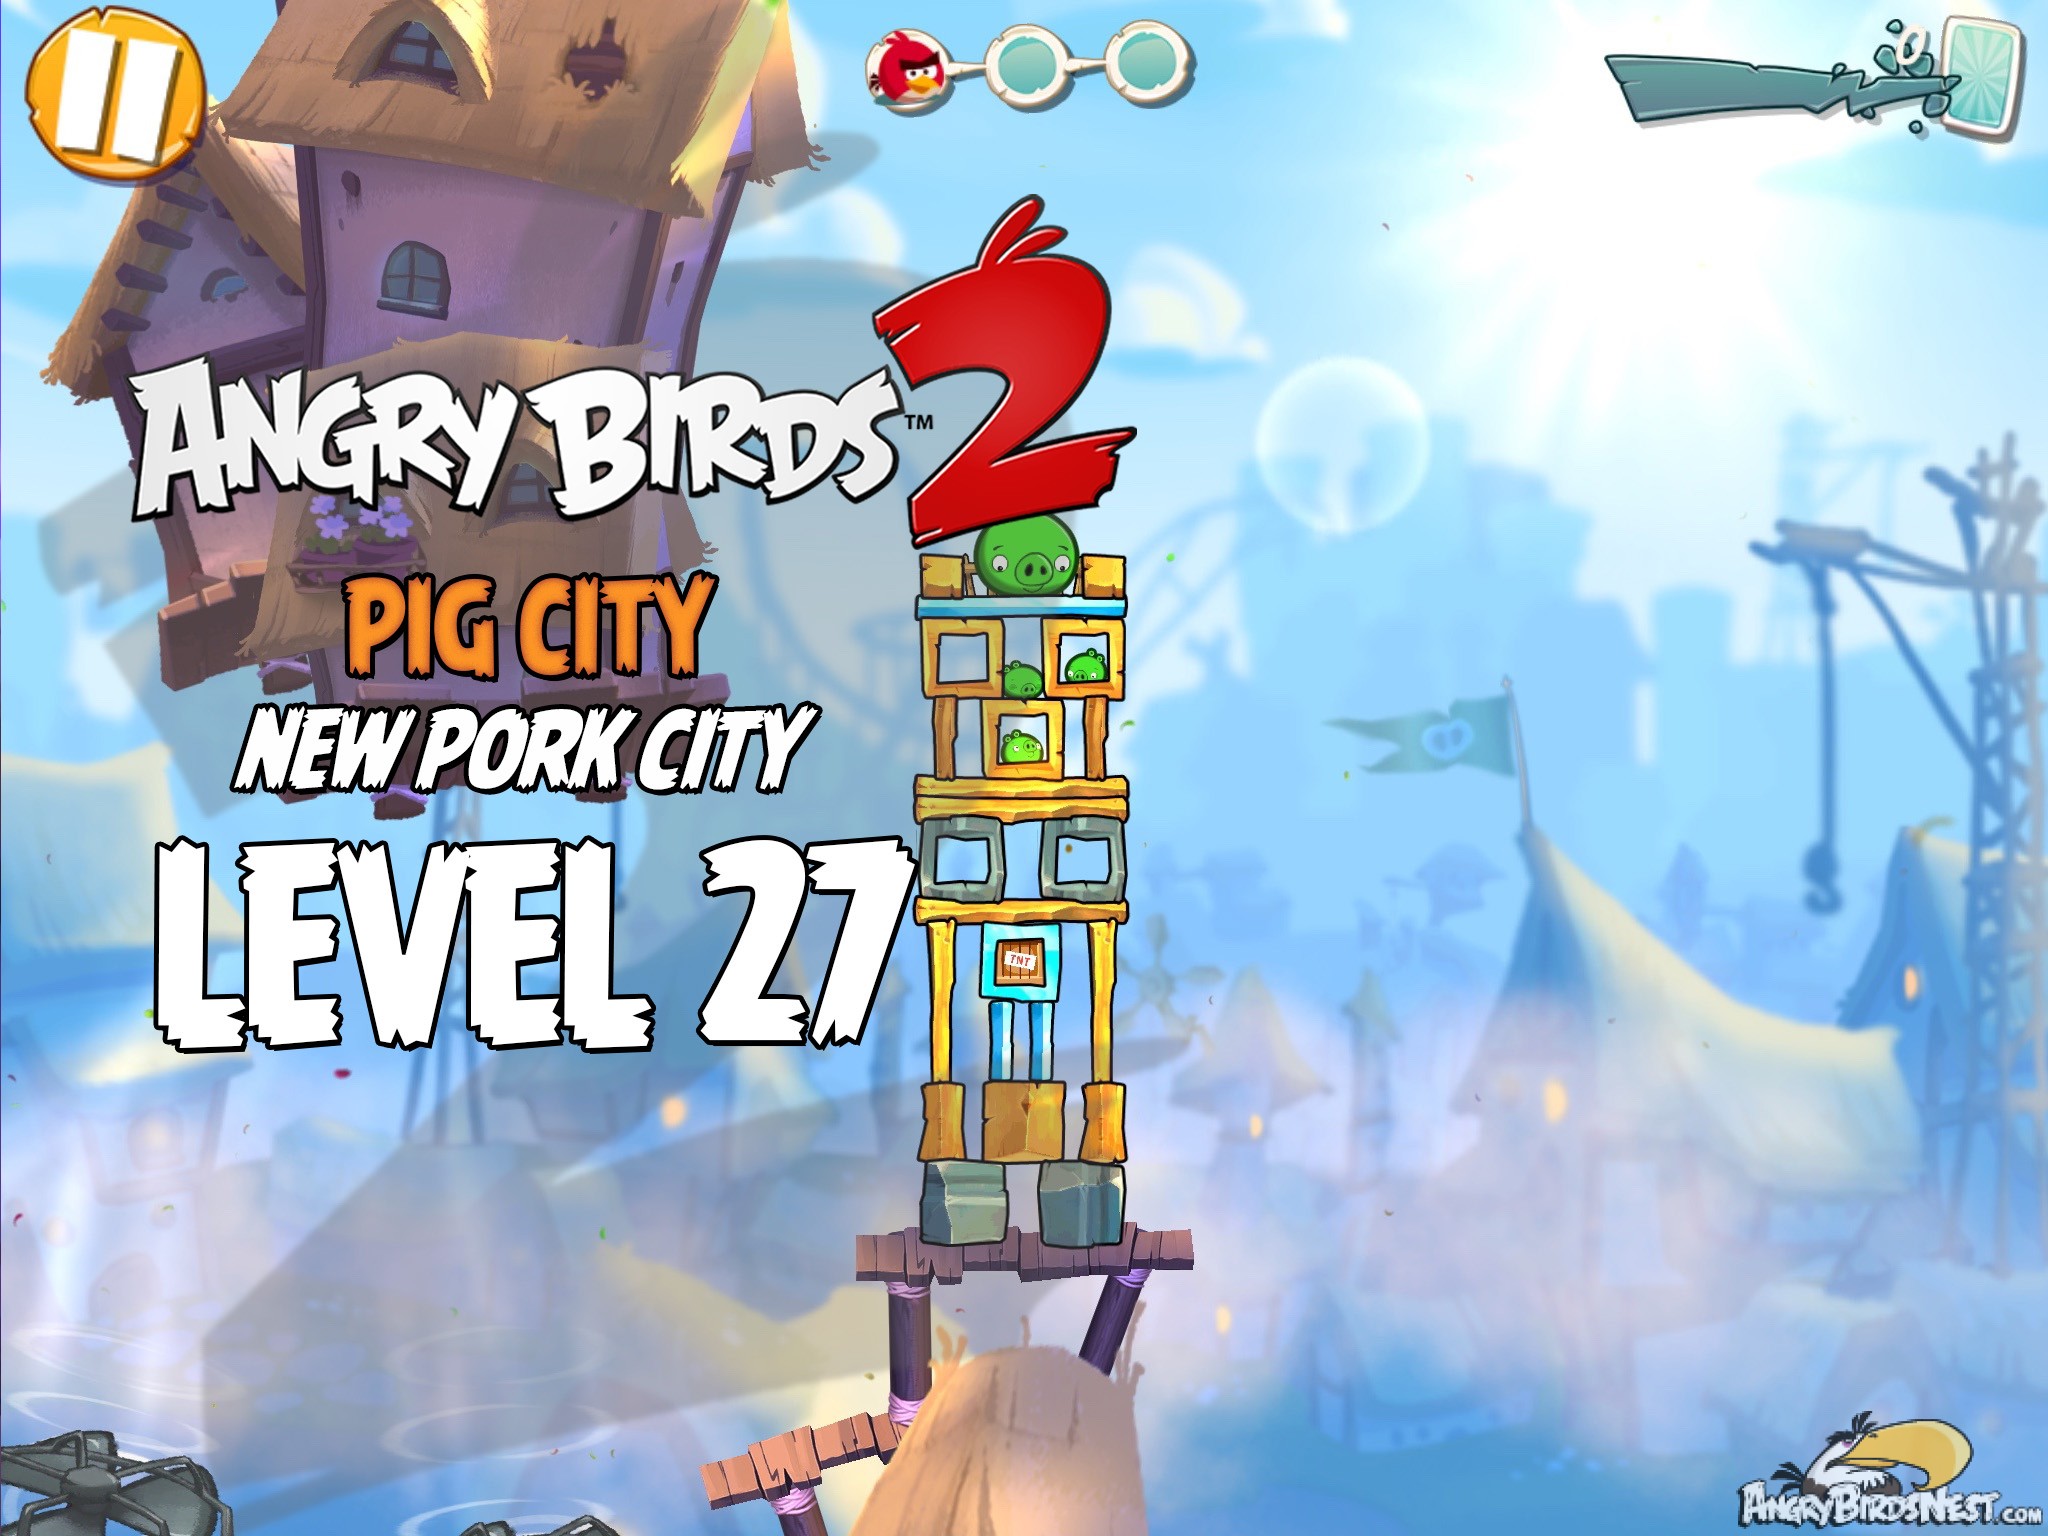 Angry Birds 2 Pig City New Pork City Level 27